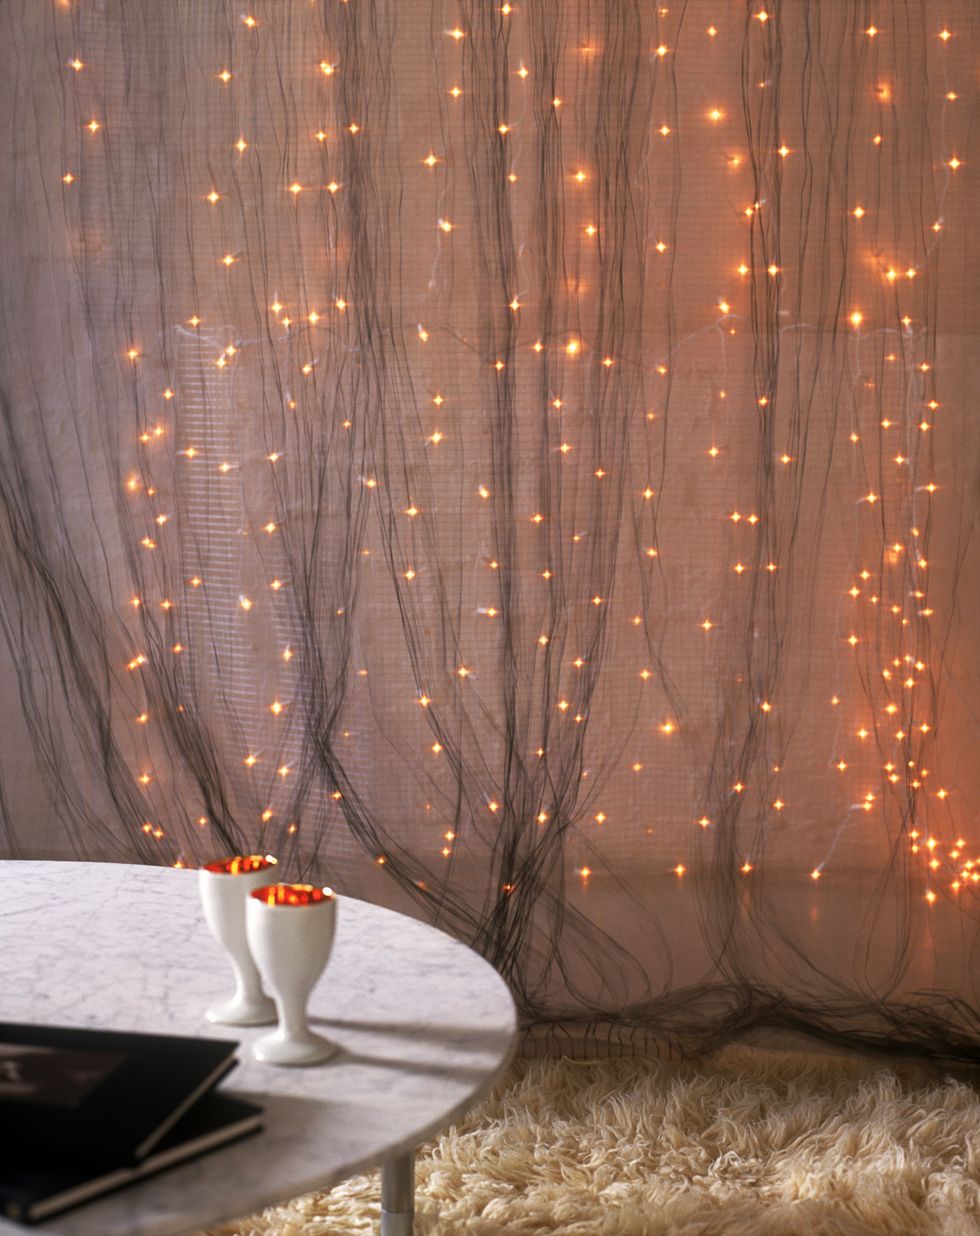 Unisci più fili di luci di Natale per creare una tenda di luce impalpabile, puoi sovrapporla alle tende della sala oppure crearne una nuova su una parete vuota della stanza